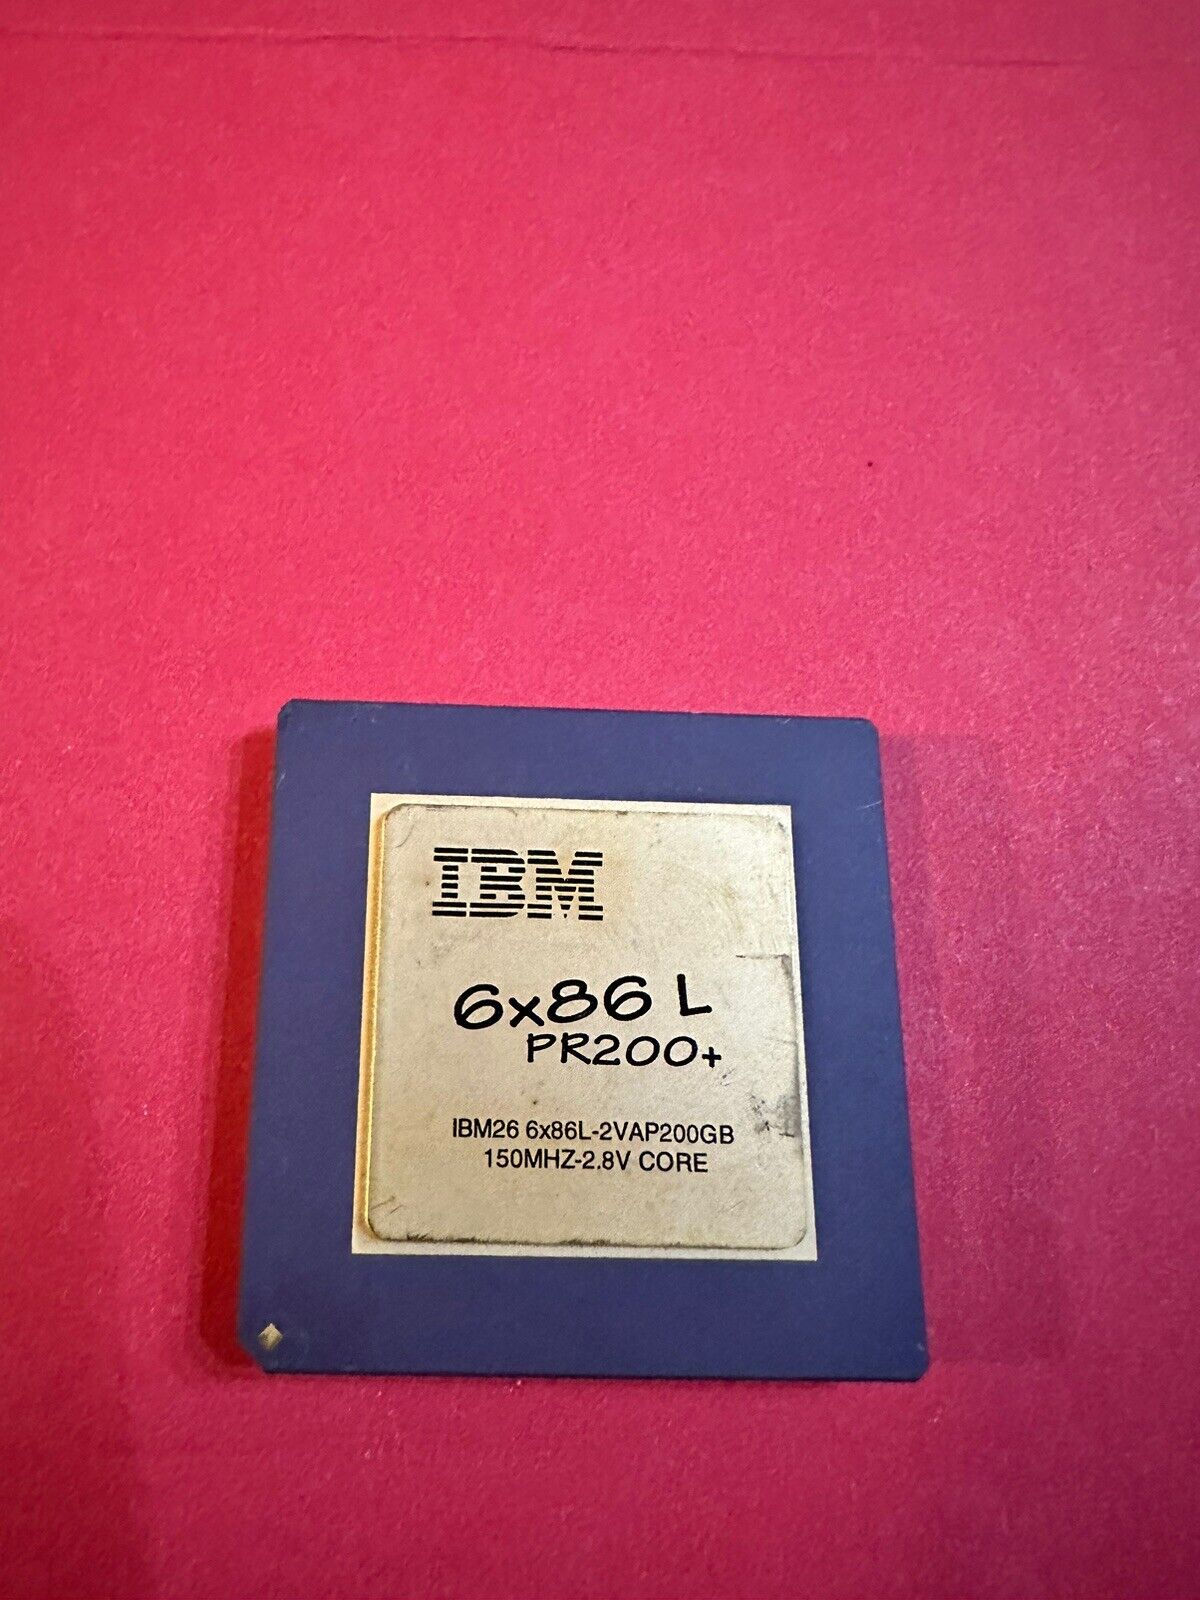 IBM 6x86 L